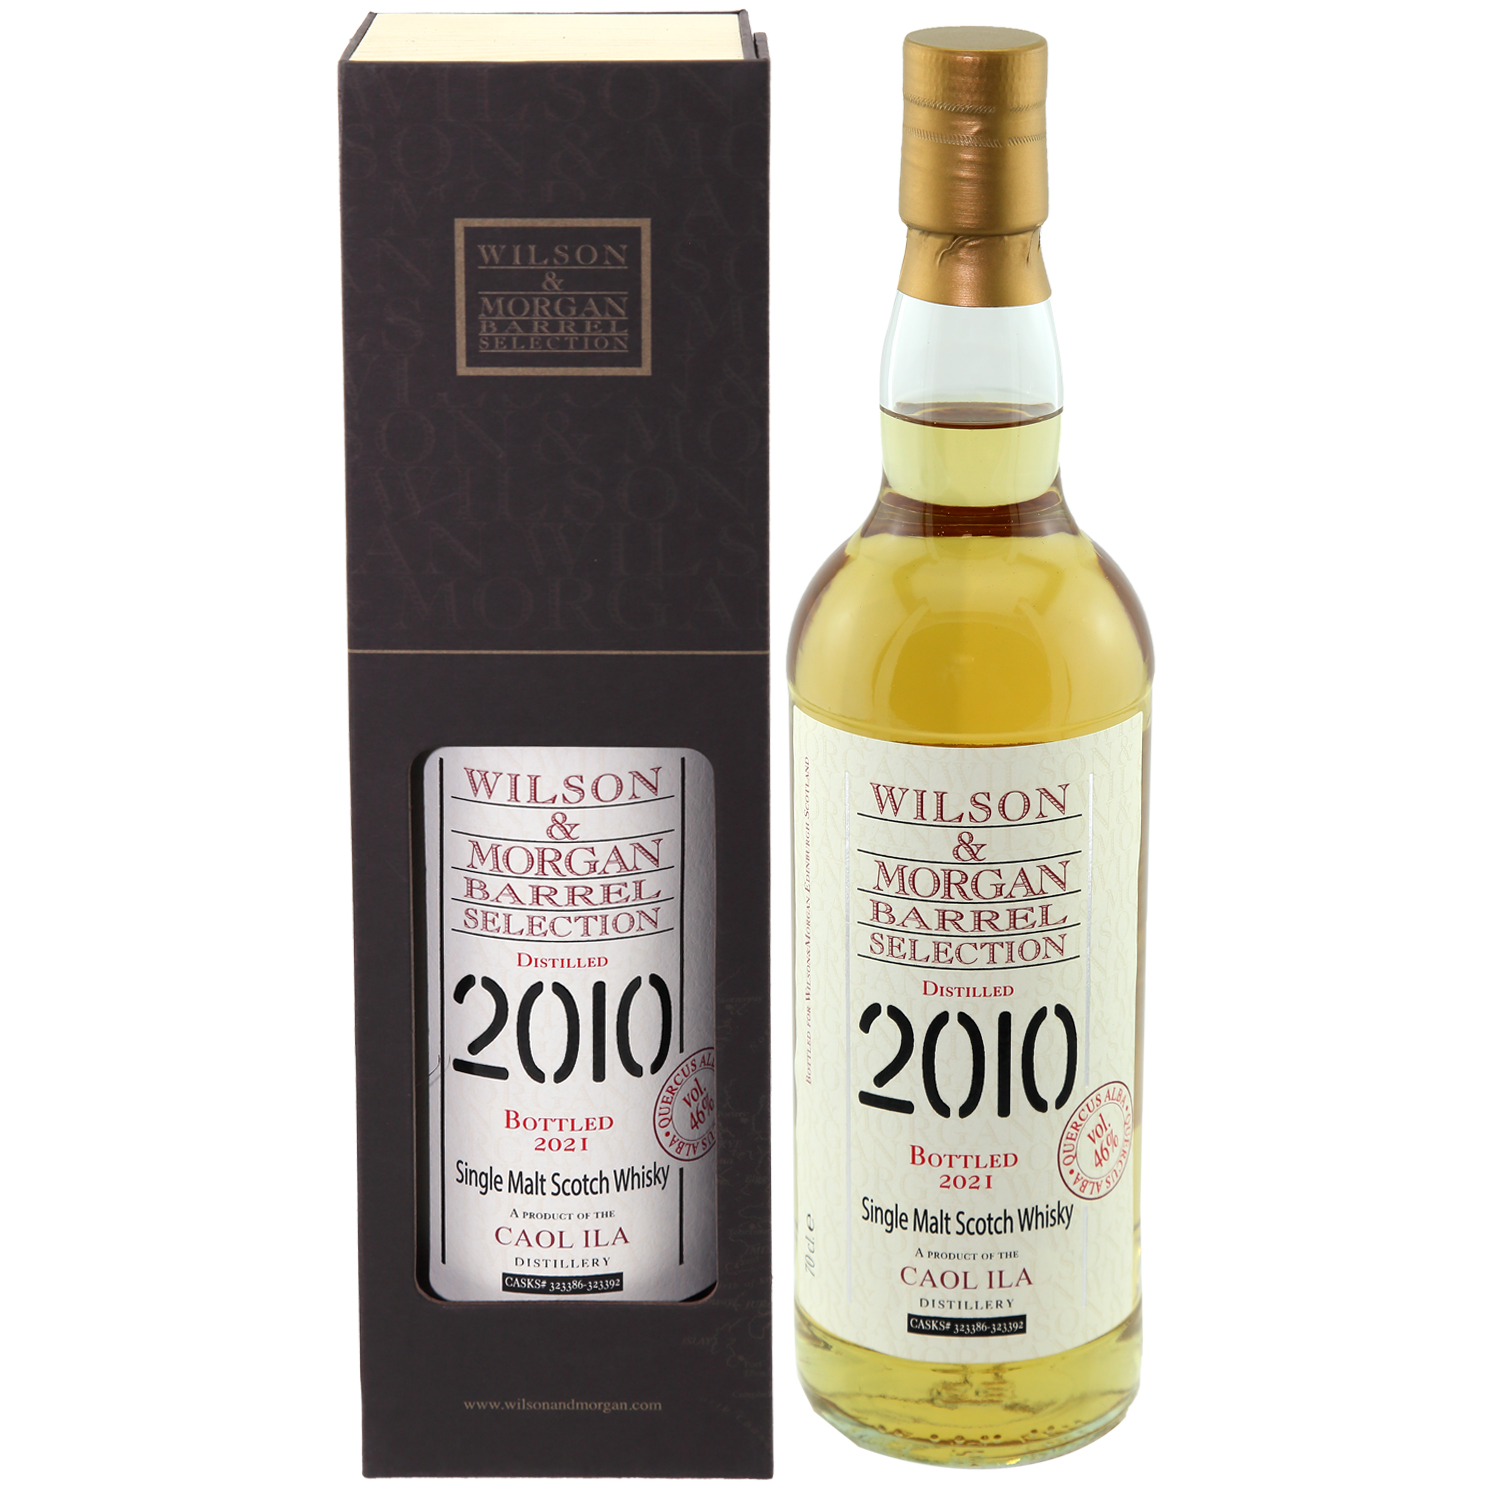 Caol Ila Whisky (2010-21) Quercus Alba, 46% 0,7 ltr. Wilson Morgan